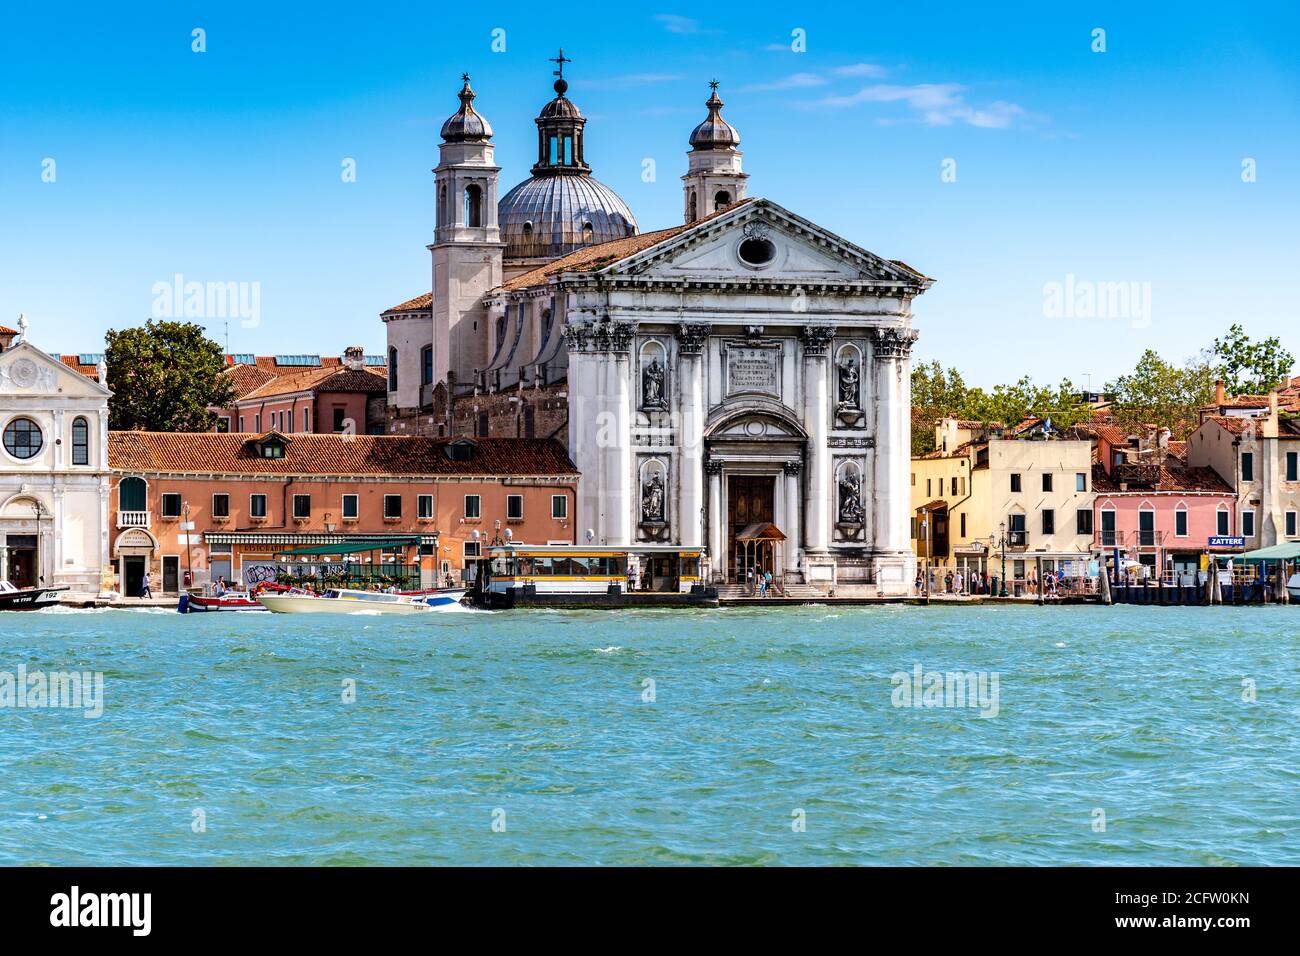 Venezia, Italia - 13 agosto 2019: Chiesa di Santa Maria del Rosario (conosciuta anche come i Gesuati) - una chiesa domenicana del XVIII secolo. Foto Stock